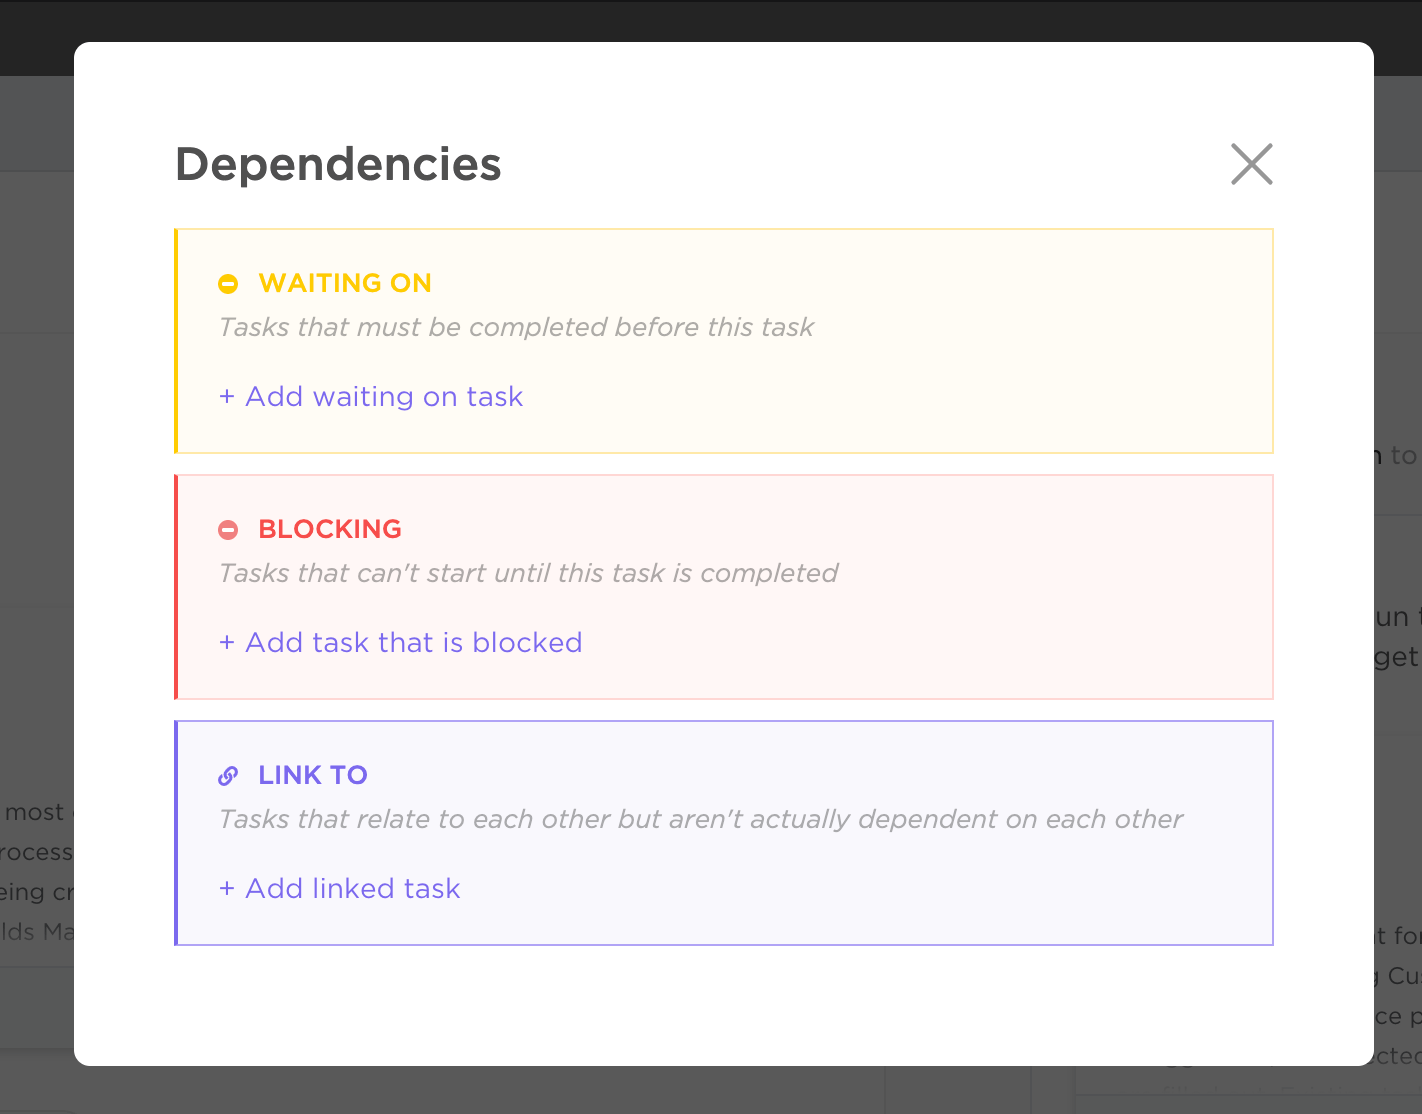 task dependencies